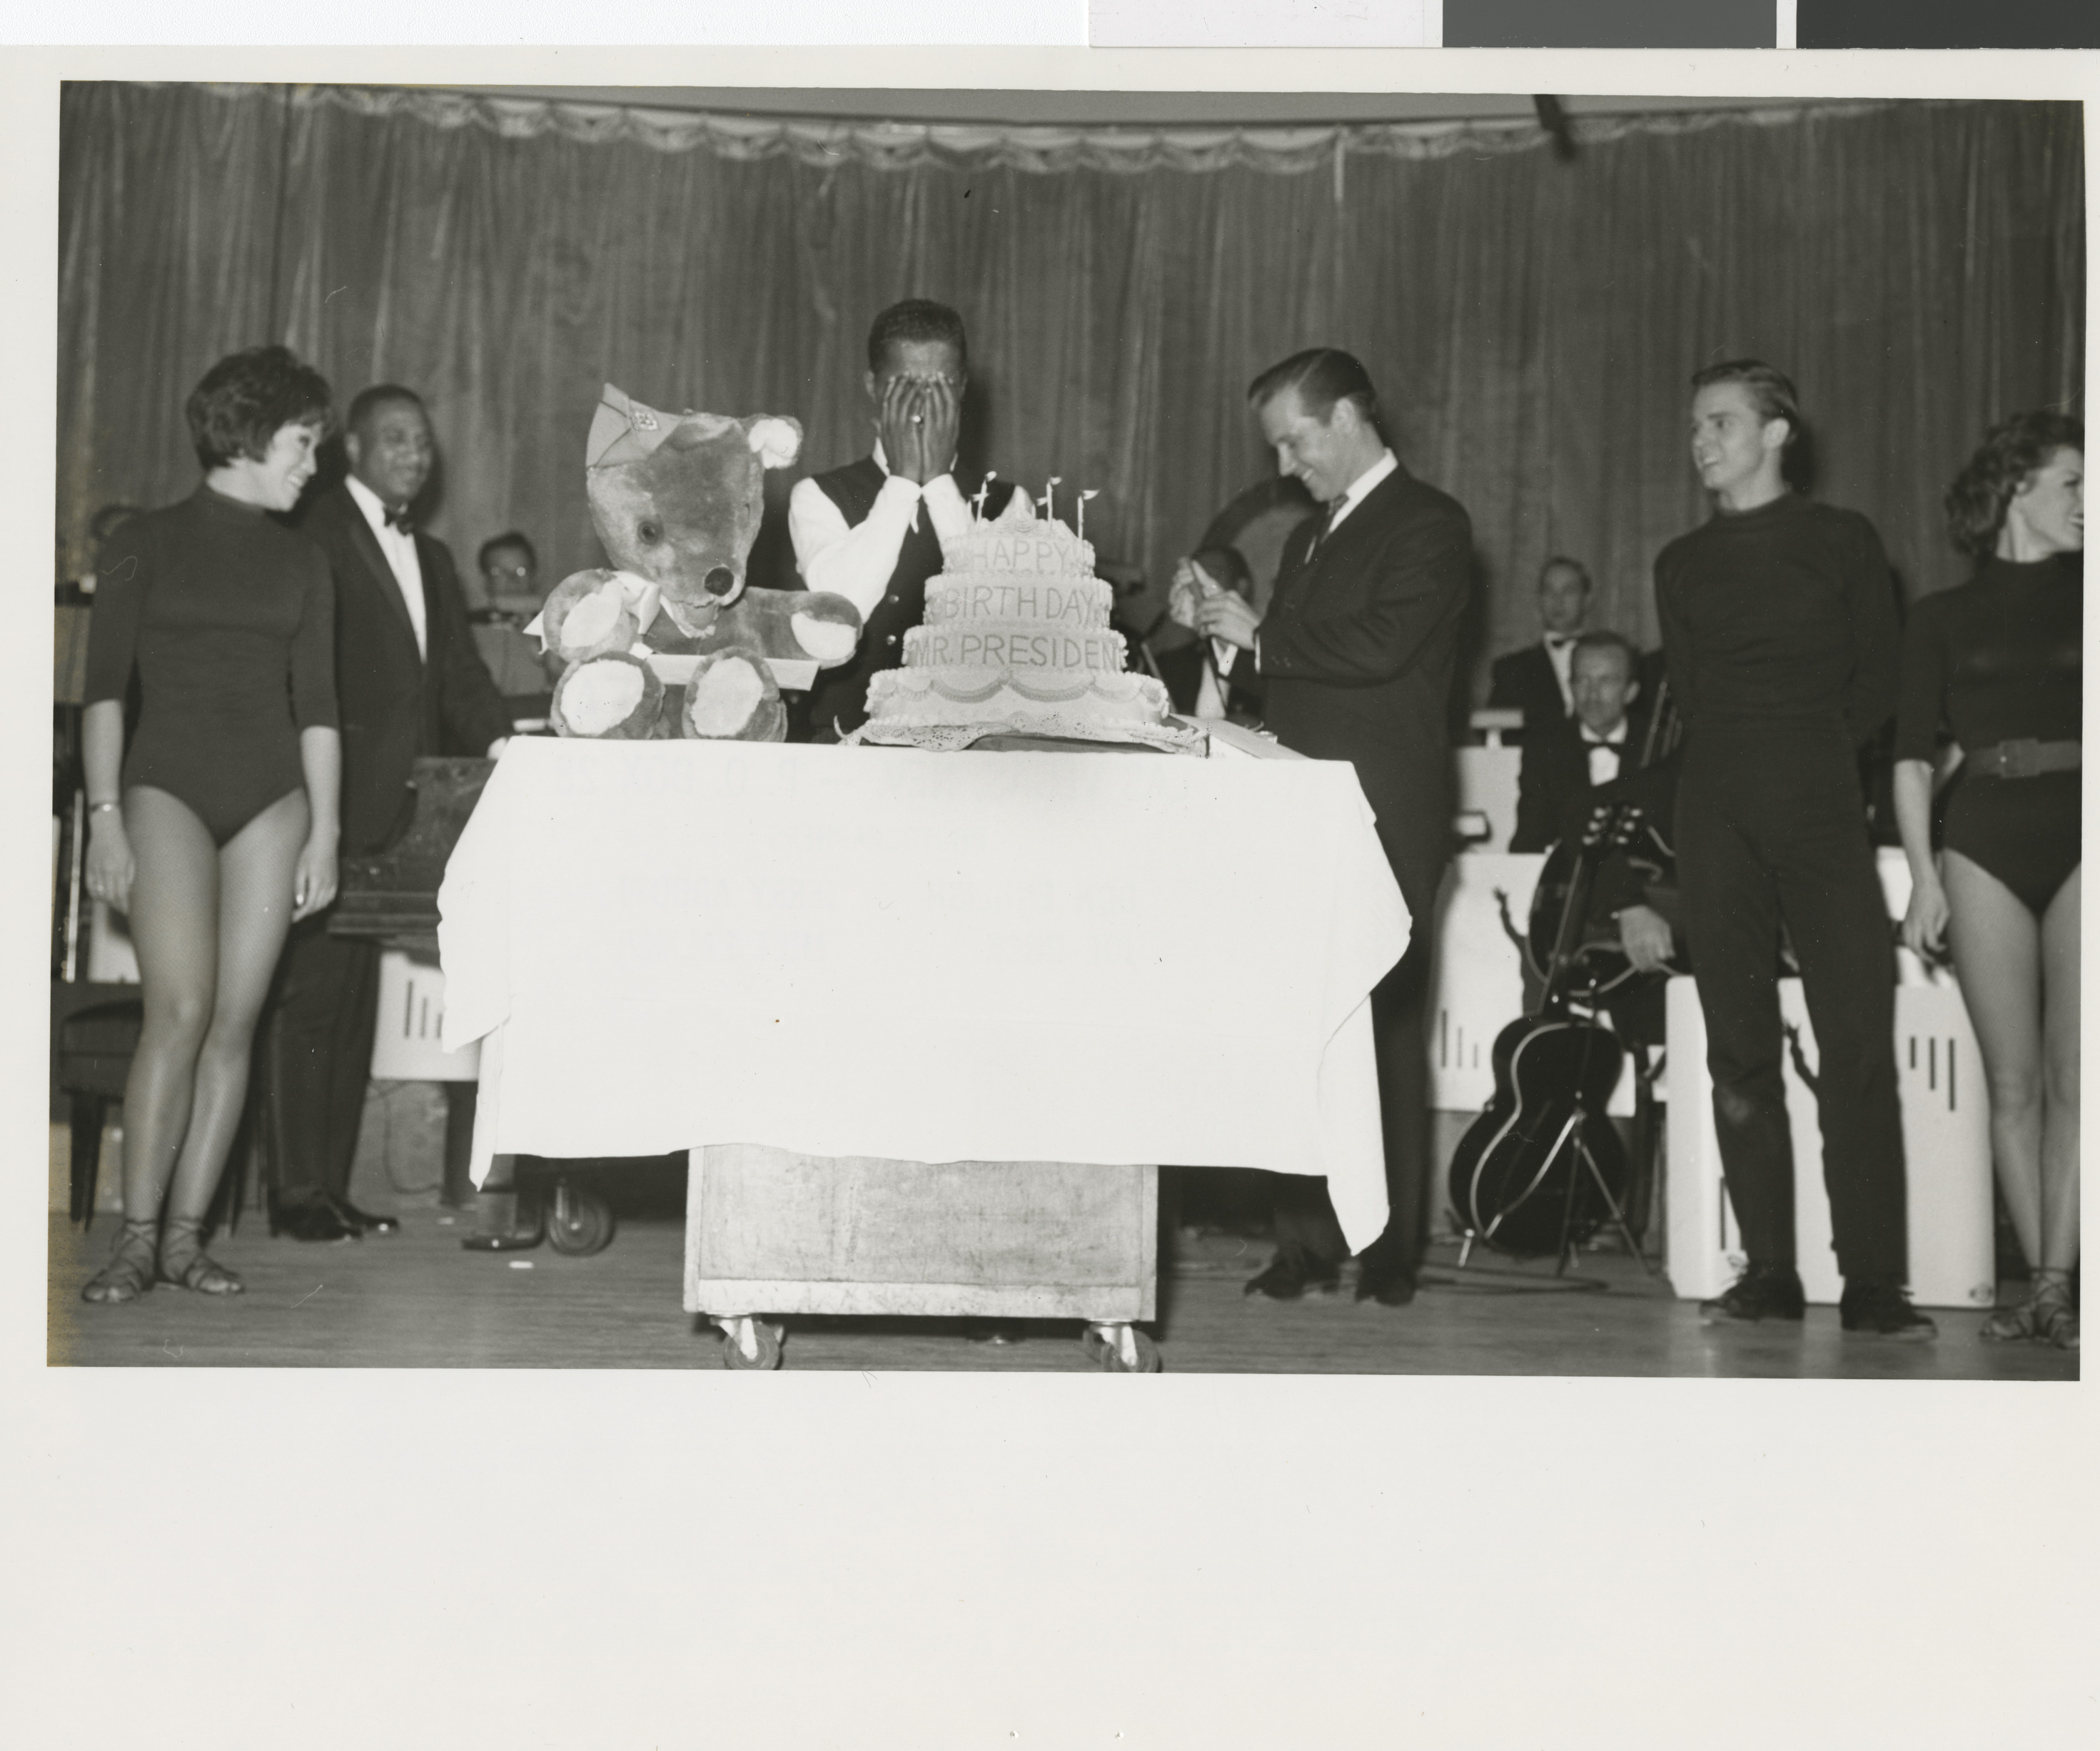 Davis and cake, image 02